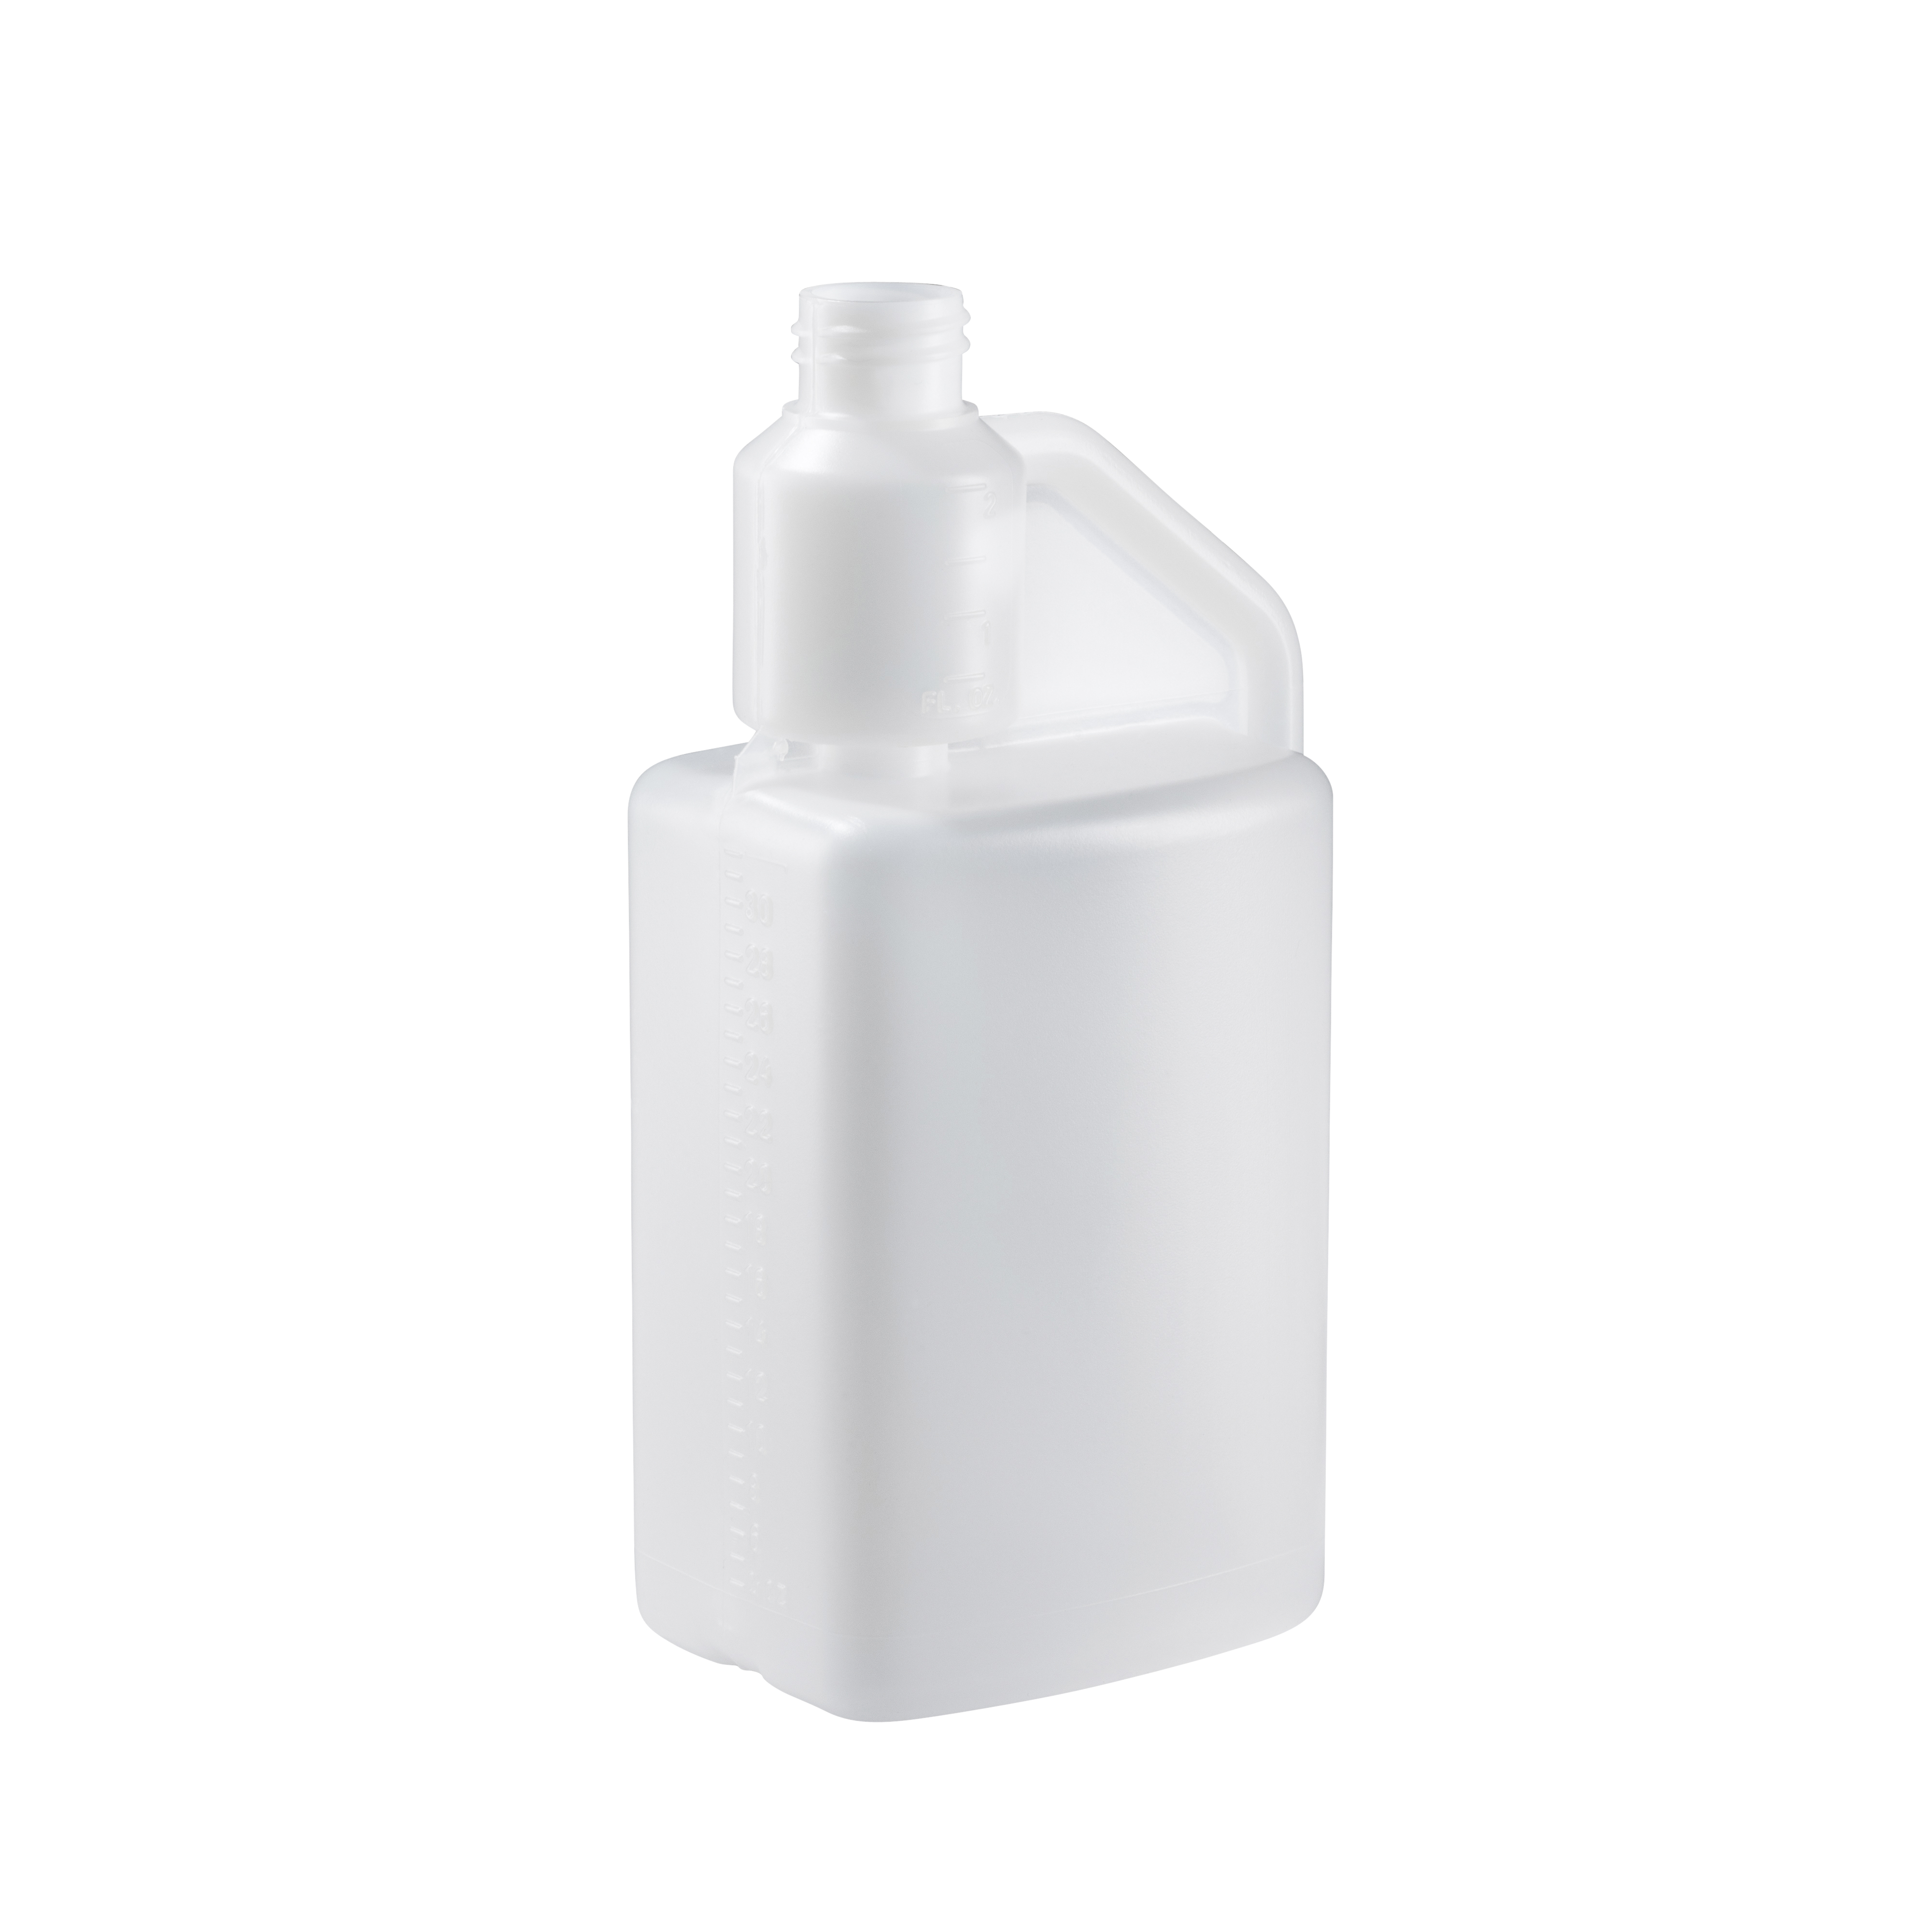 White liquid Storage container